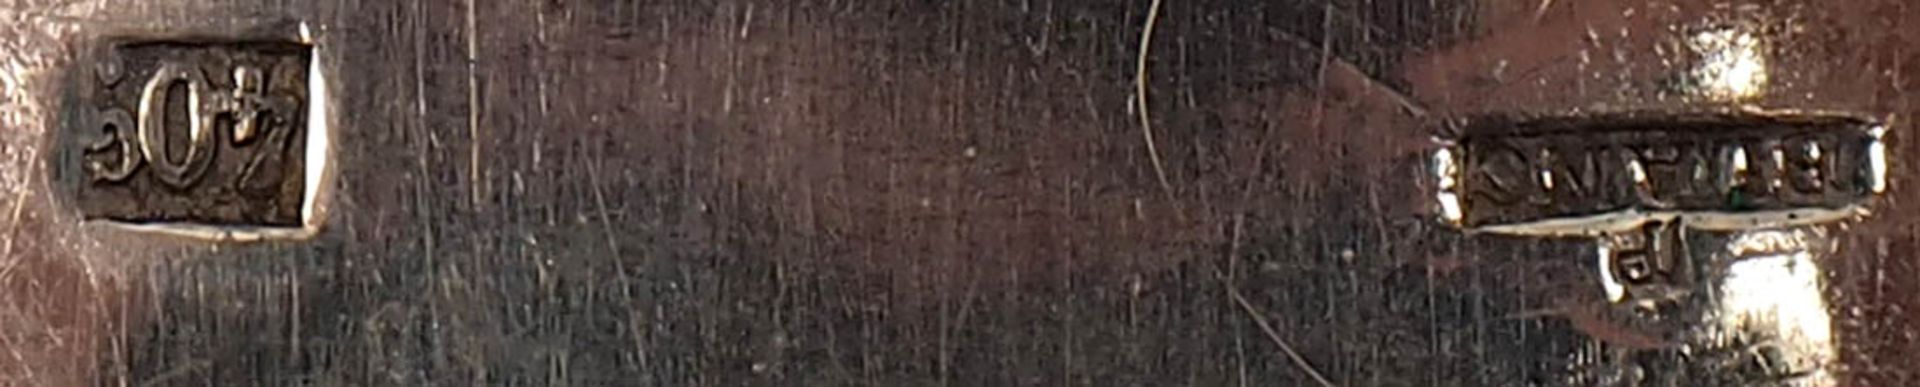 Sechs Löffel und sechs Gabeln, 19.Jhdt. Griffe in Spatenform. Silber (?), ungepunzt. - Bild 4 aus 4